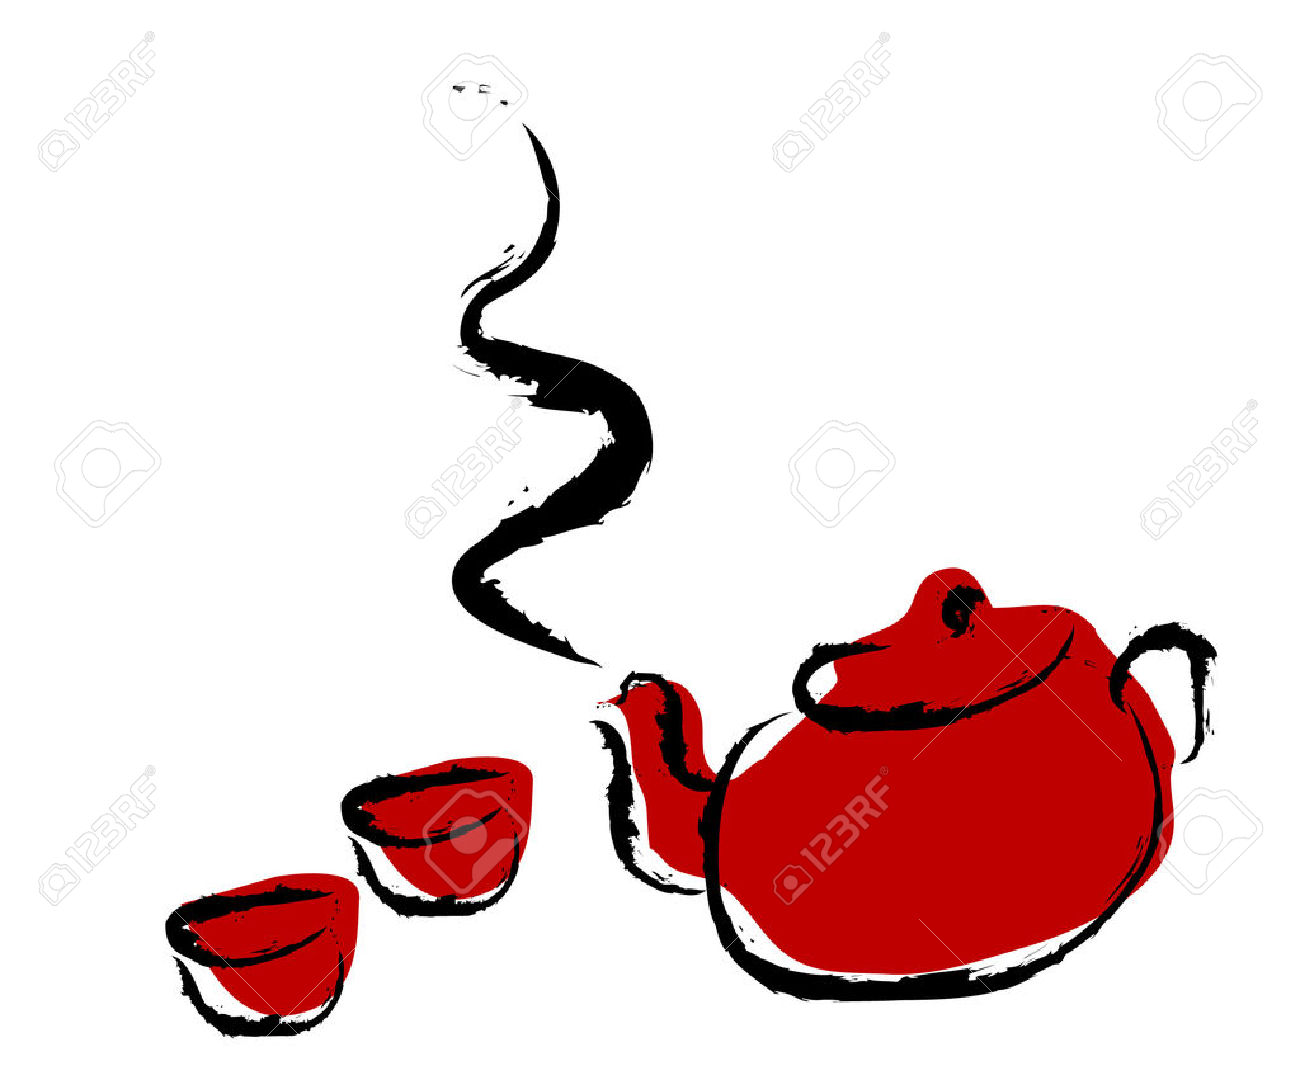 asian clipart teapot